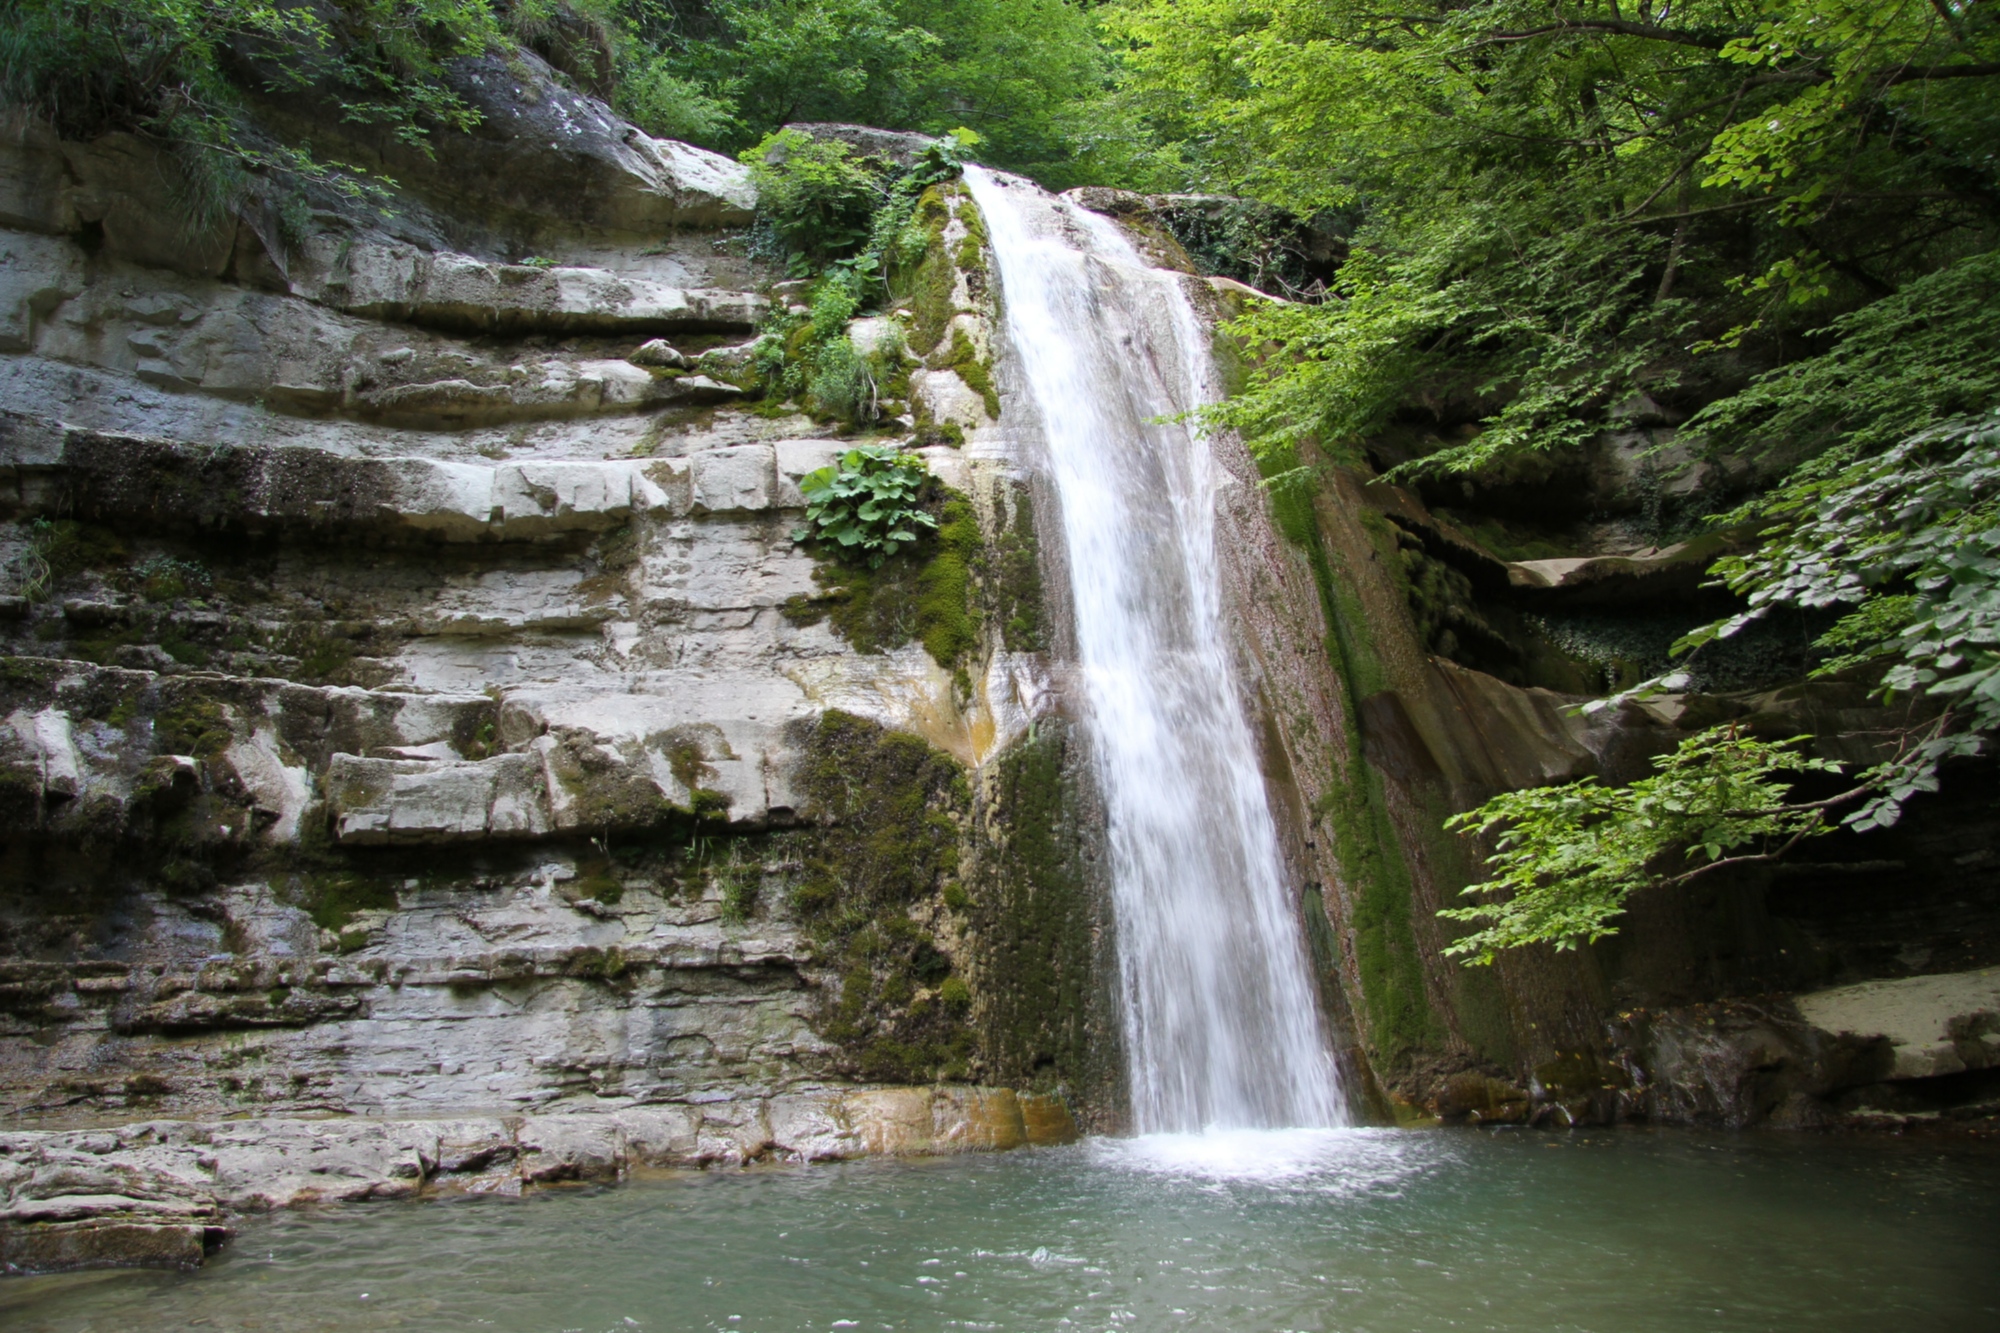 The Acquacheta waterfalls